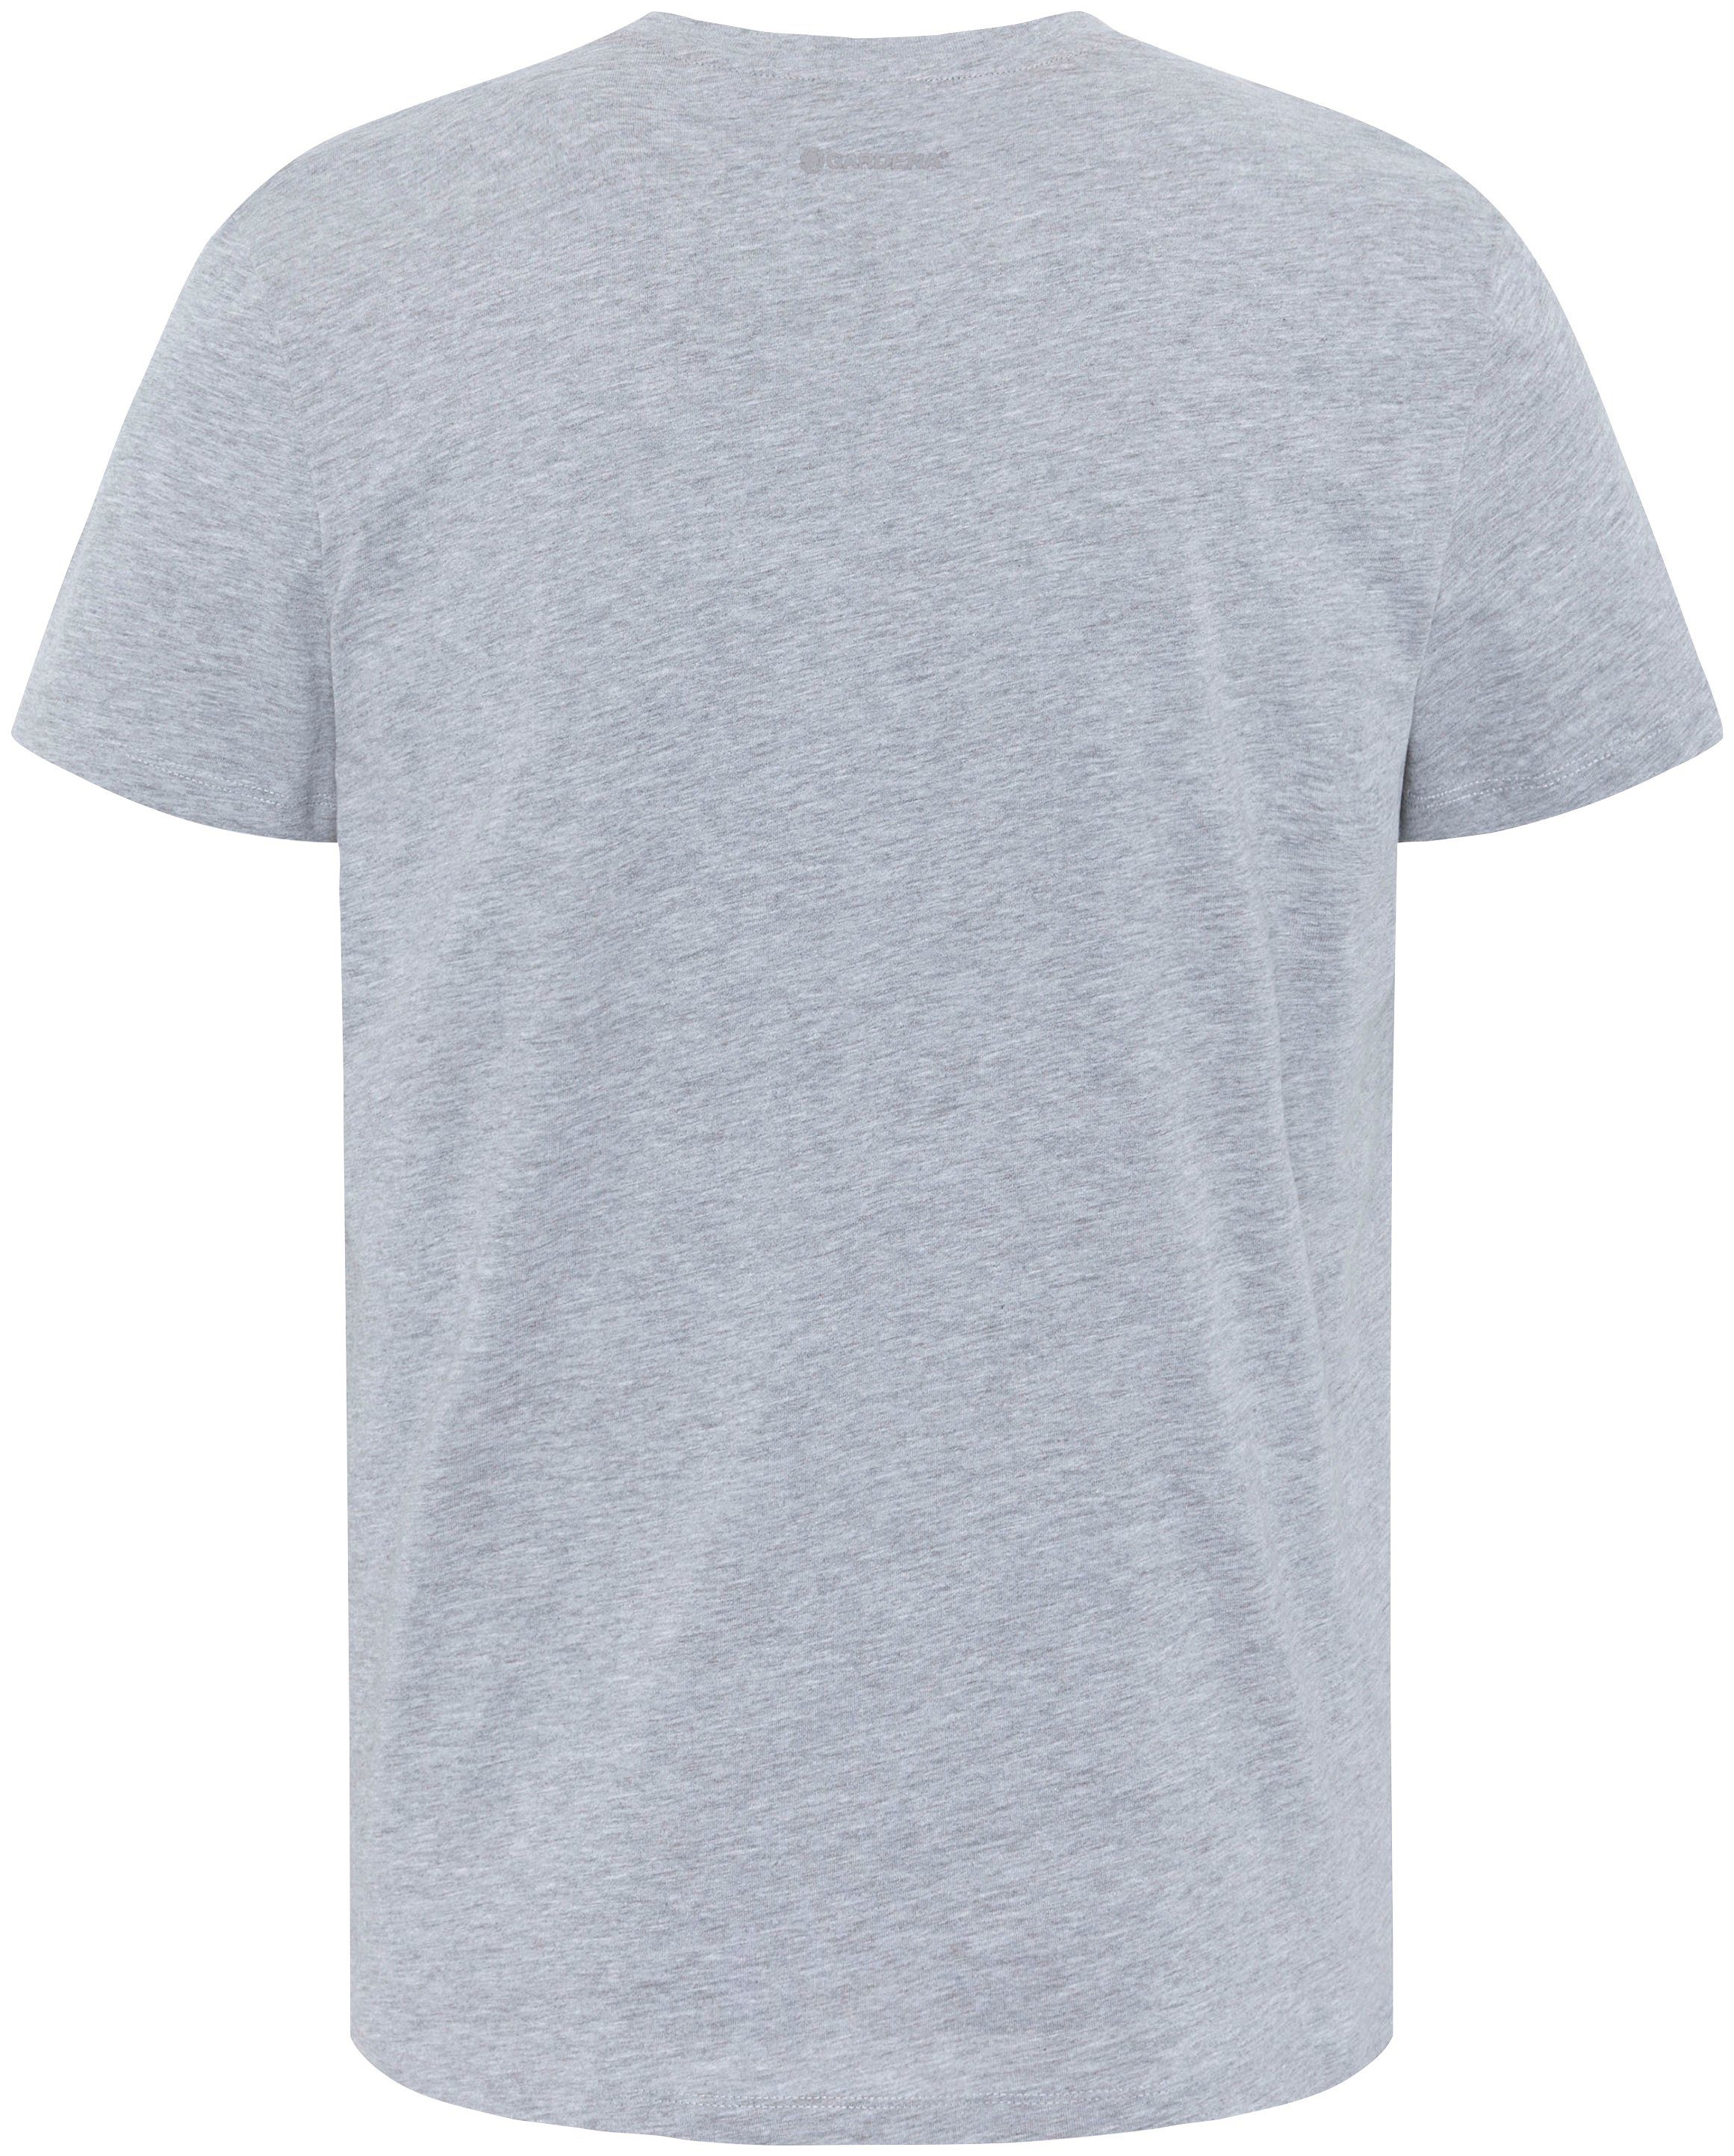 mit Grey Aufdruck T-Shirt Melange GARDENA Light